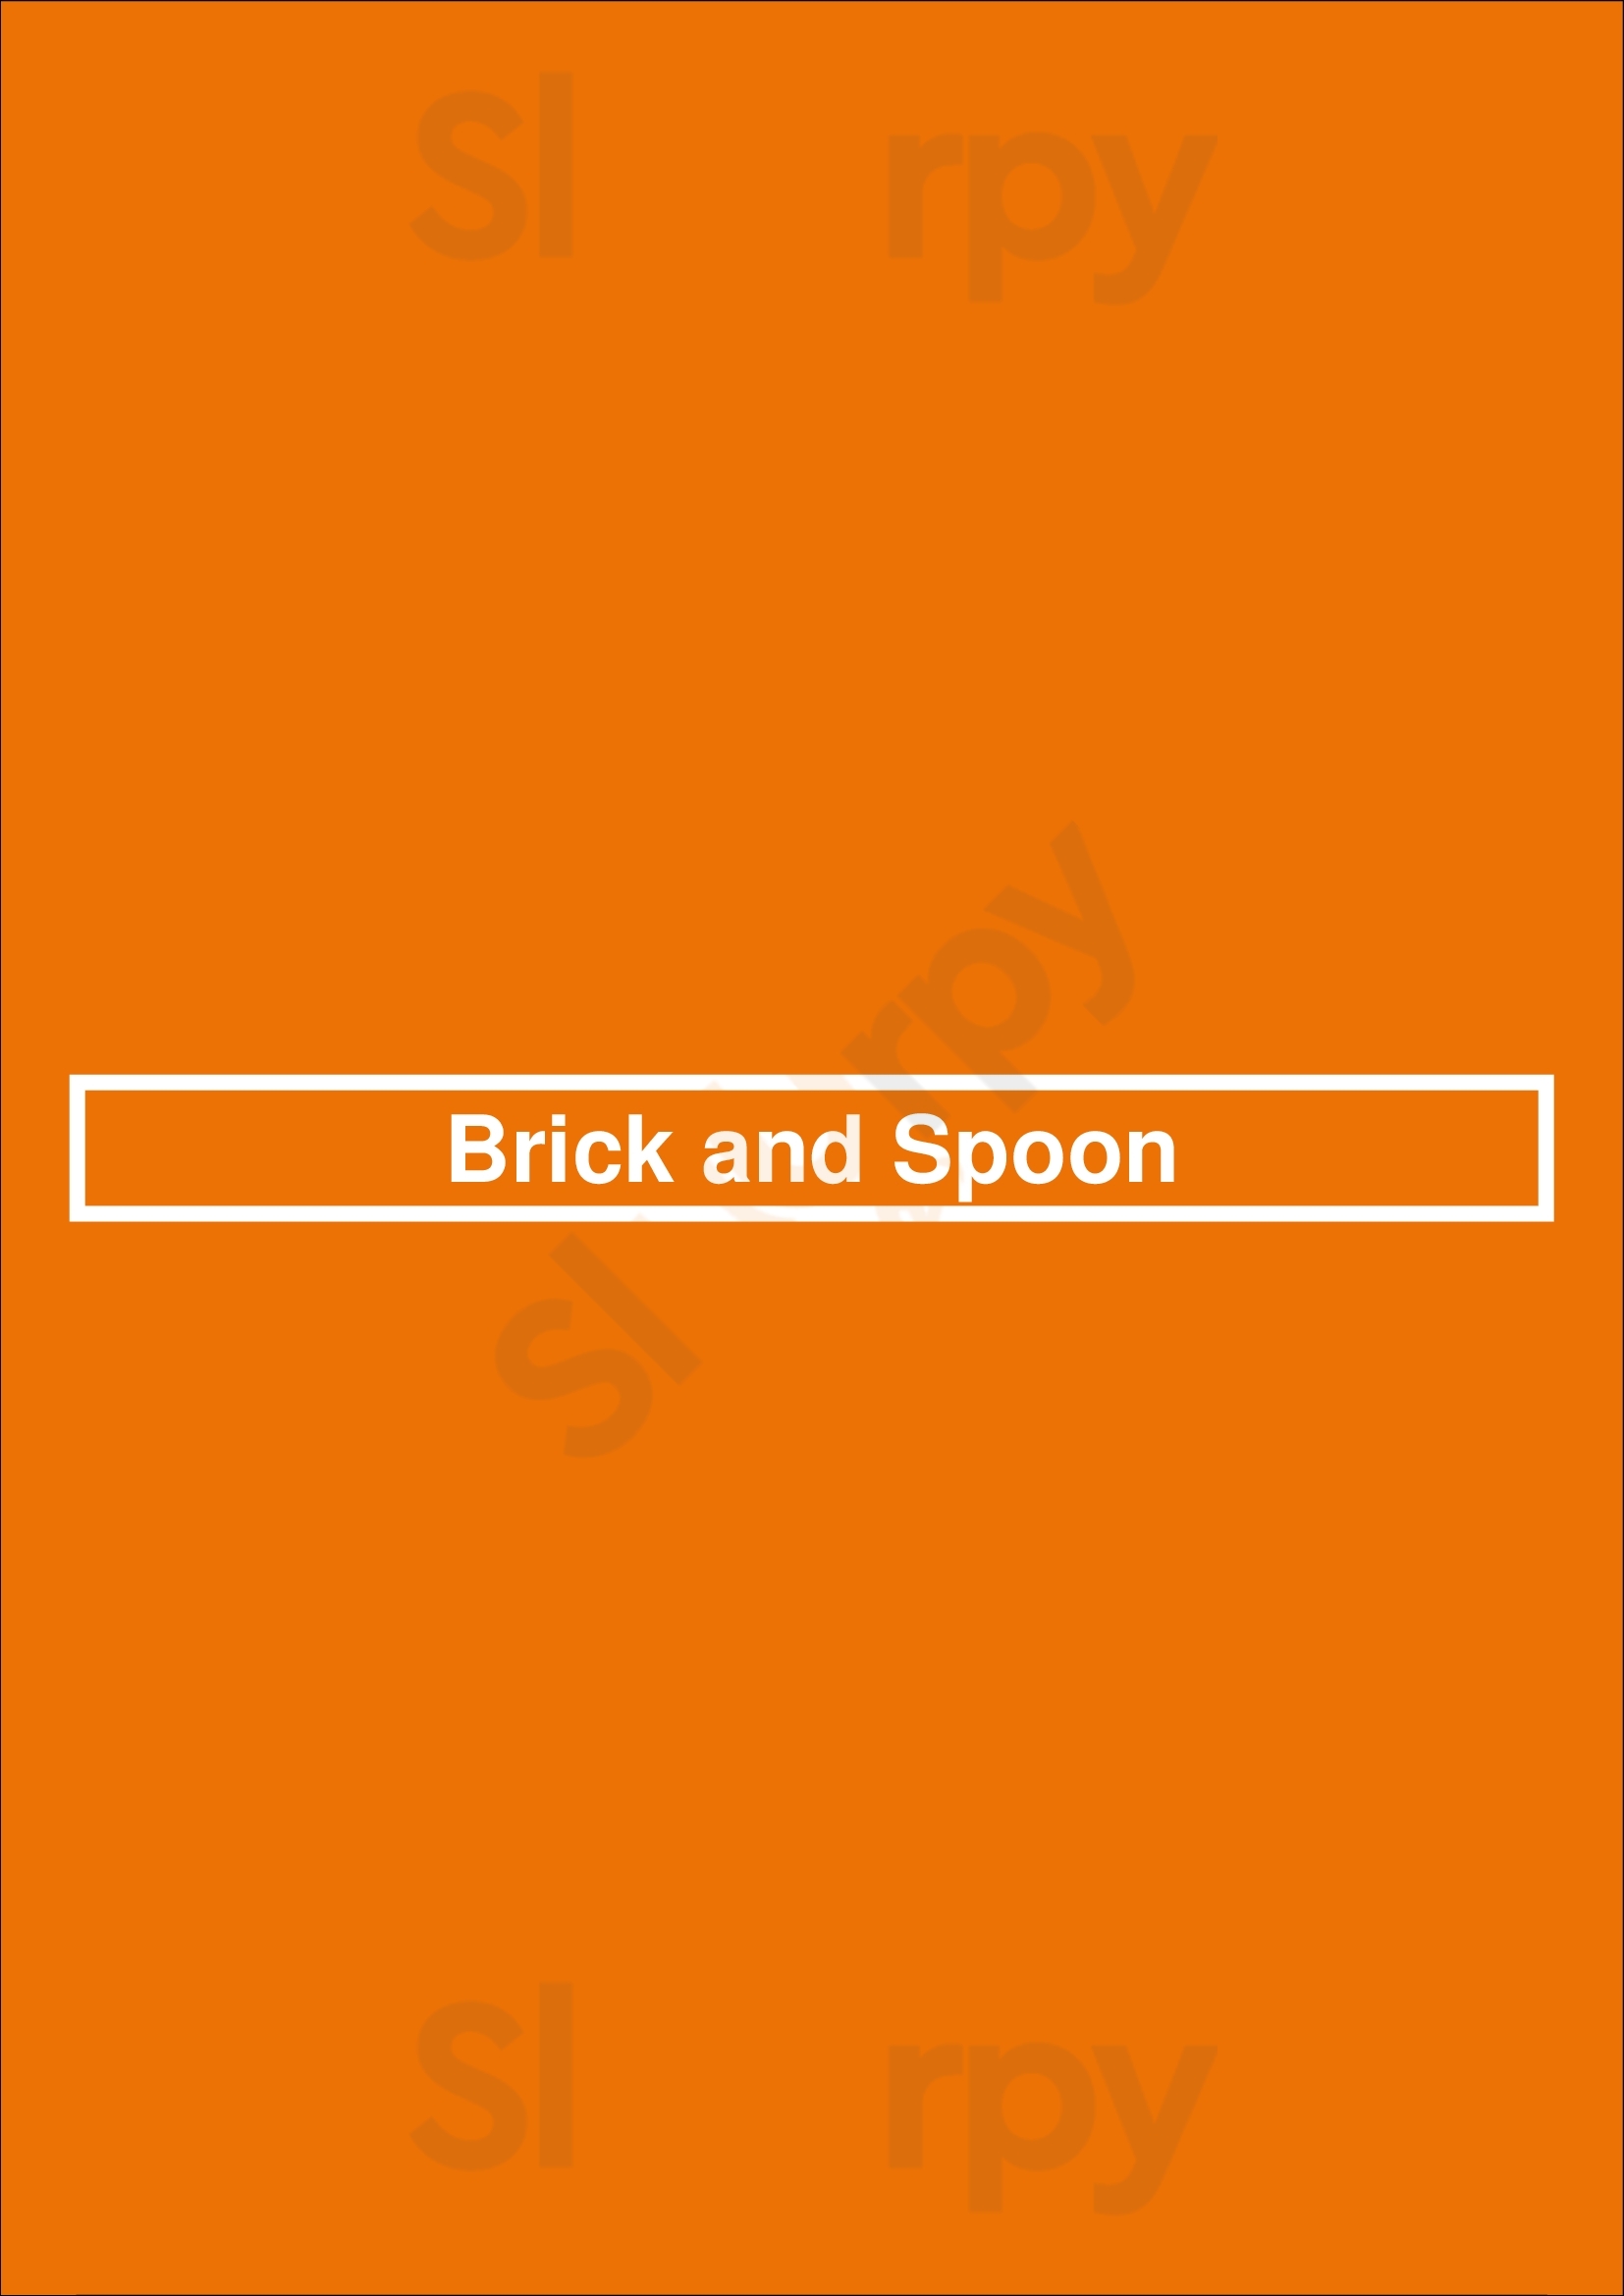 Brick And Spoon Mobile Menu - 1